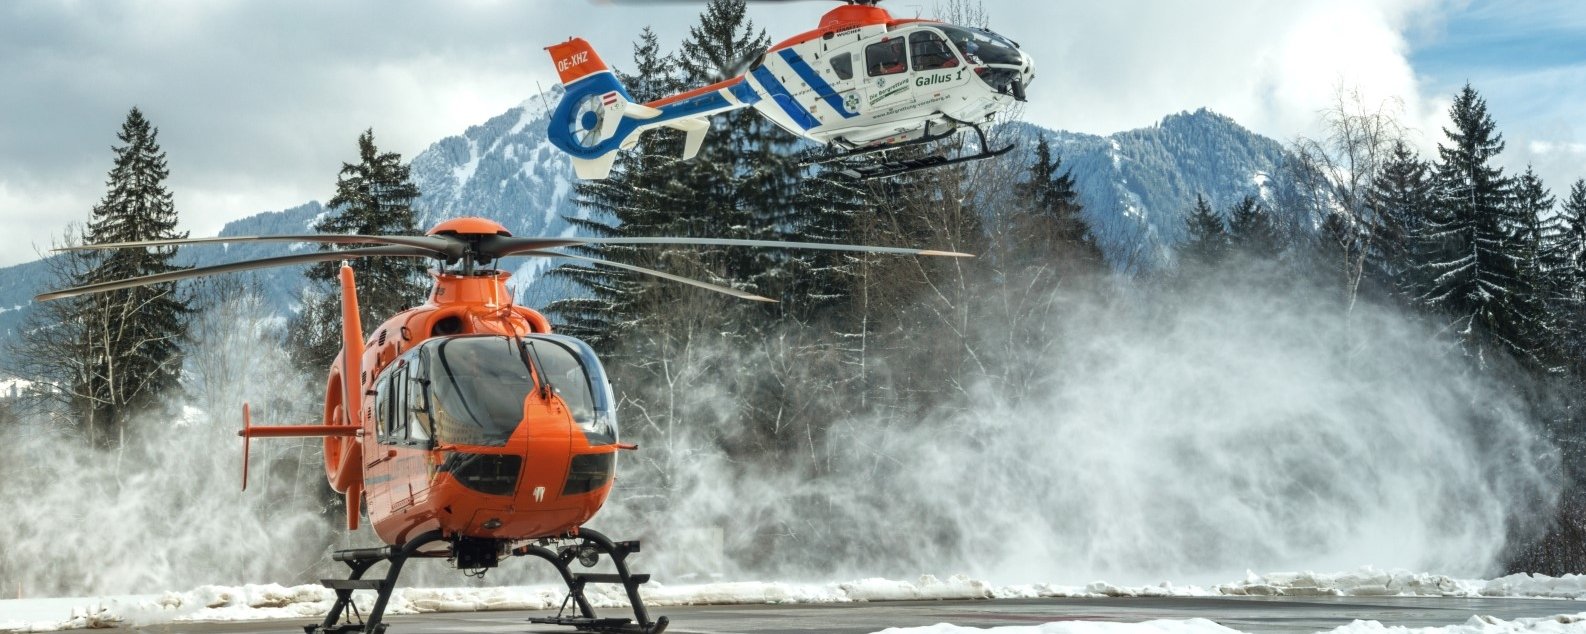 Ein Oranger Hubschrauber steht auf einem Hubschrauberlandeplatz. Ein weiß-blauer Hubschrauber ist wenige Meter darüber in der Luft.